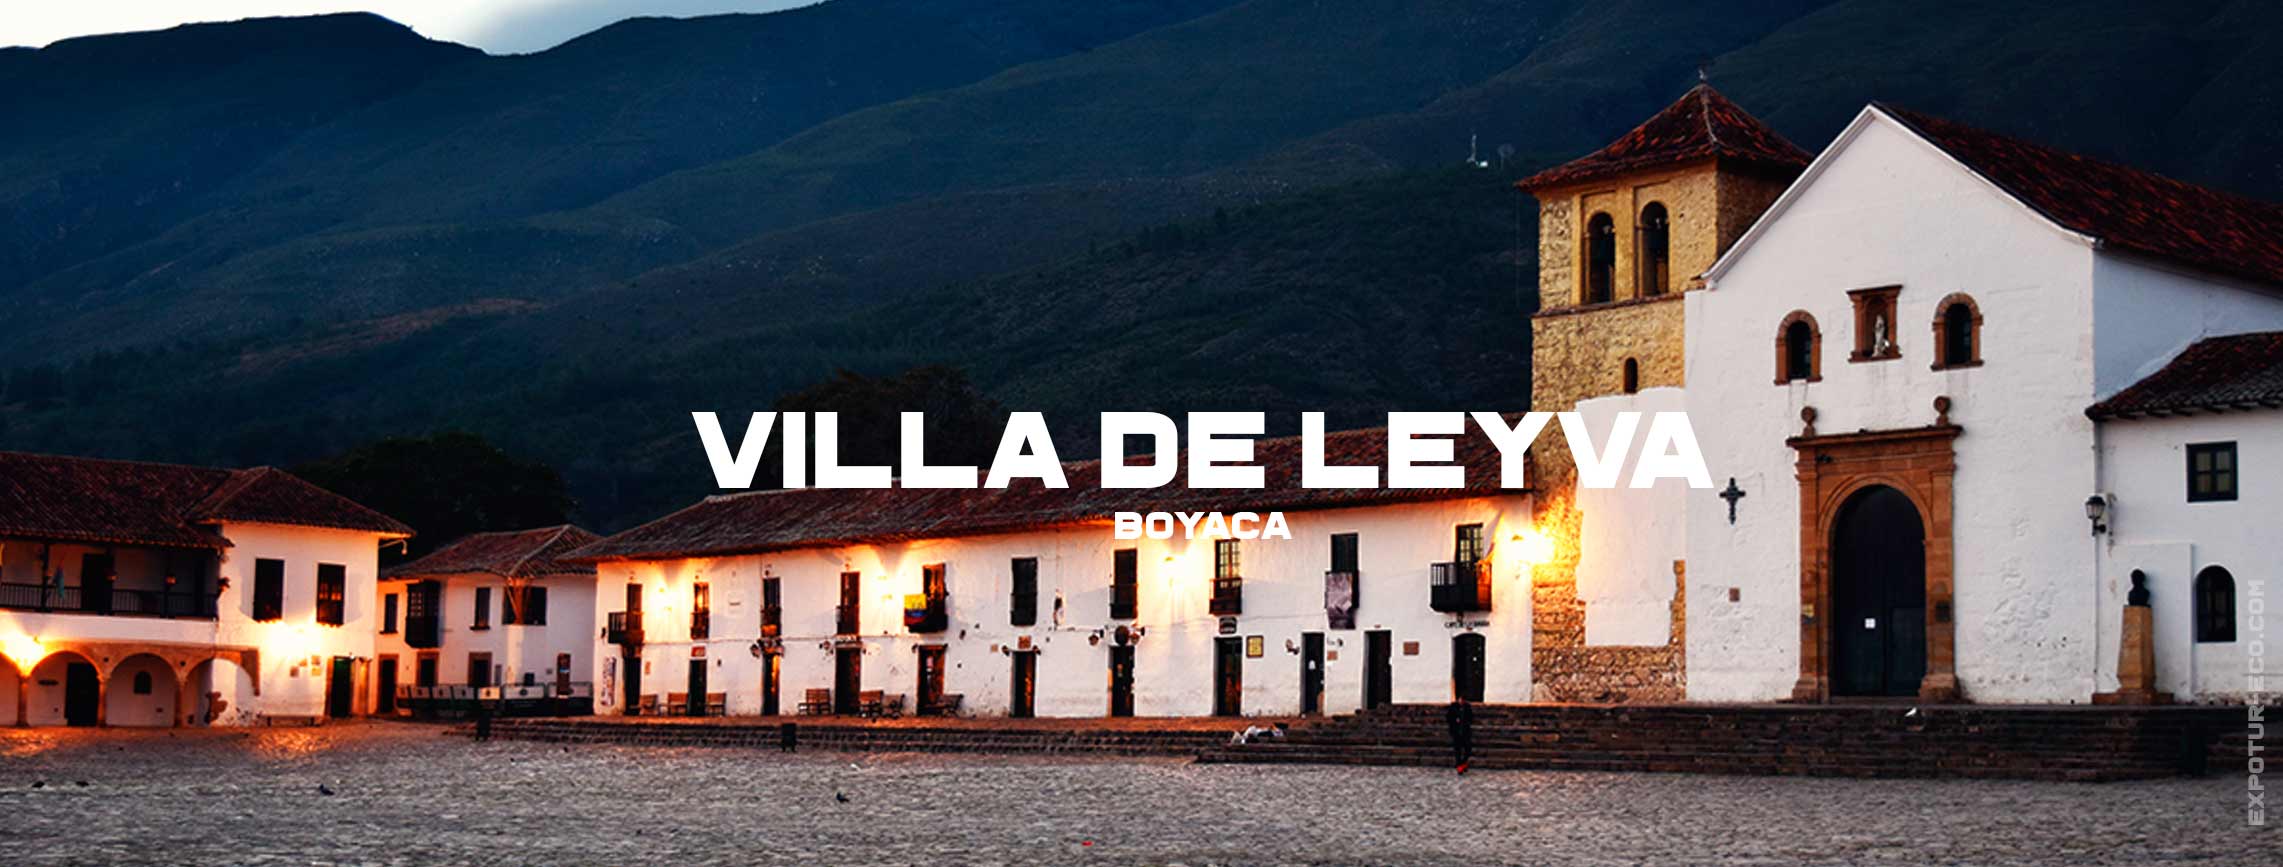 villa-de-leyva-blog-semana-santa-expotur-lugar-turistico-colombia Easter